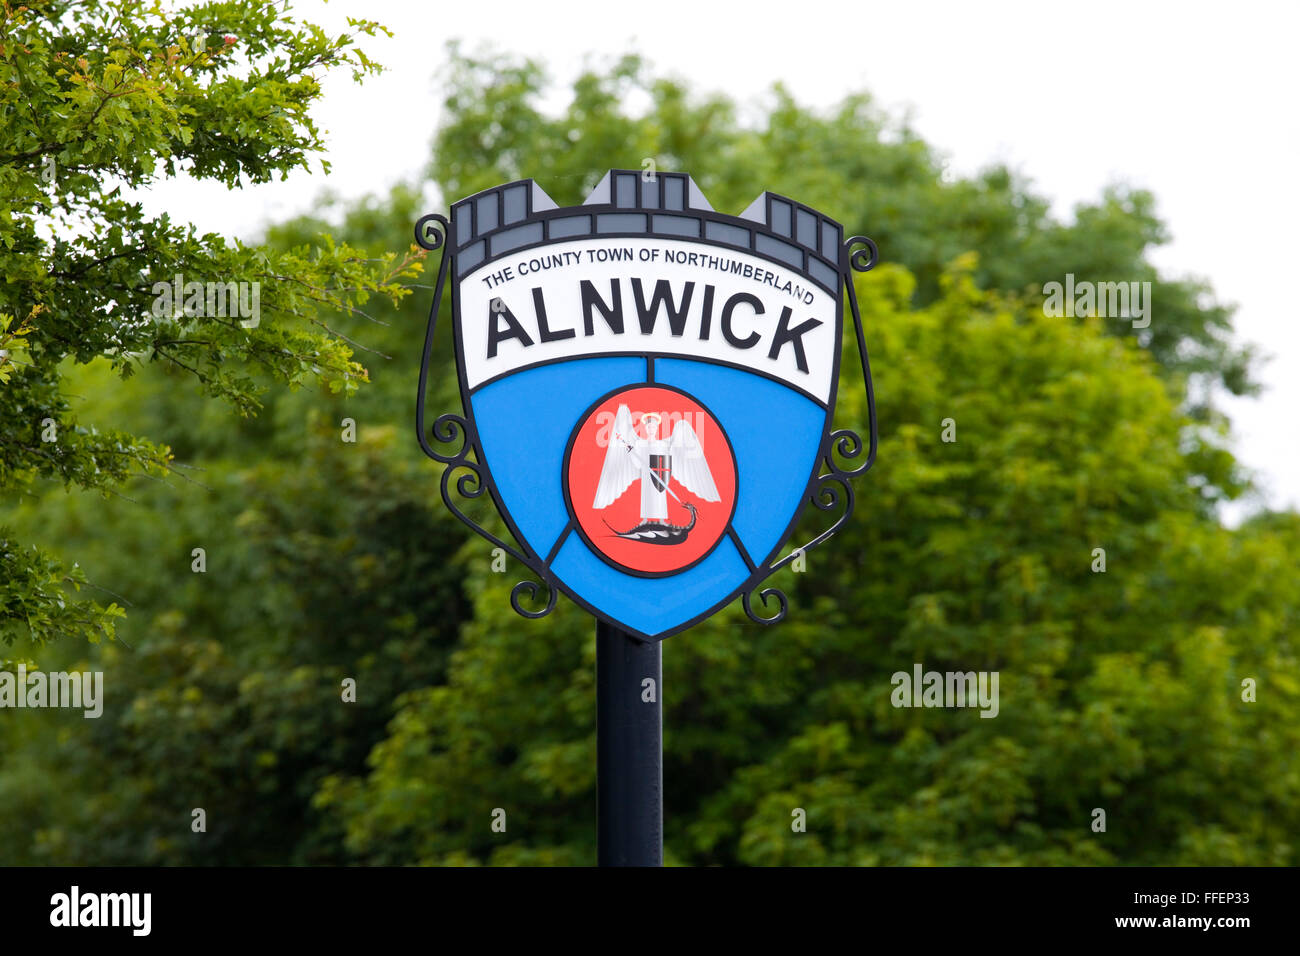 Alnwick, Northumberland, England. Melden Sie sich am Eingang der Stadt zeigt einen Engel, einen Drachen zu töten. Stockfoto